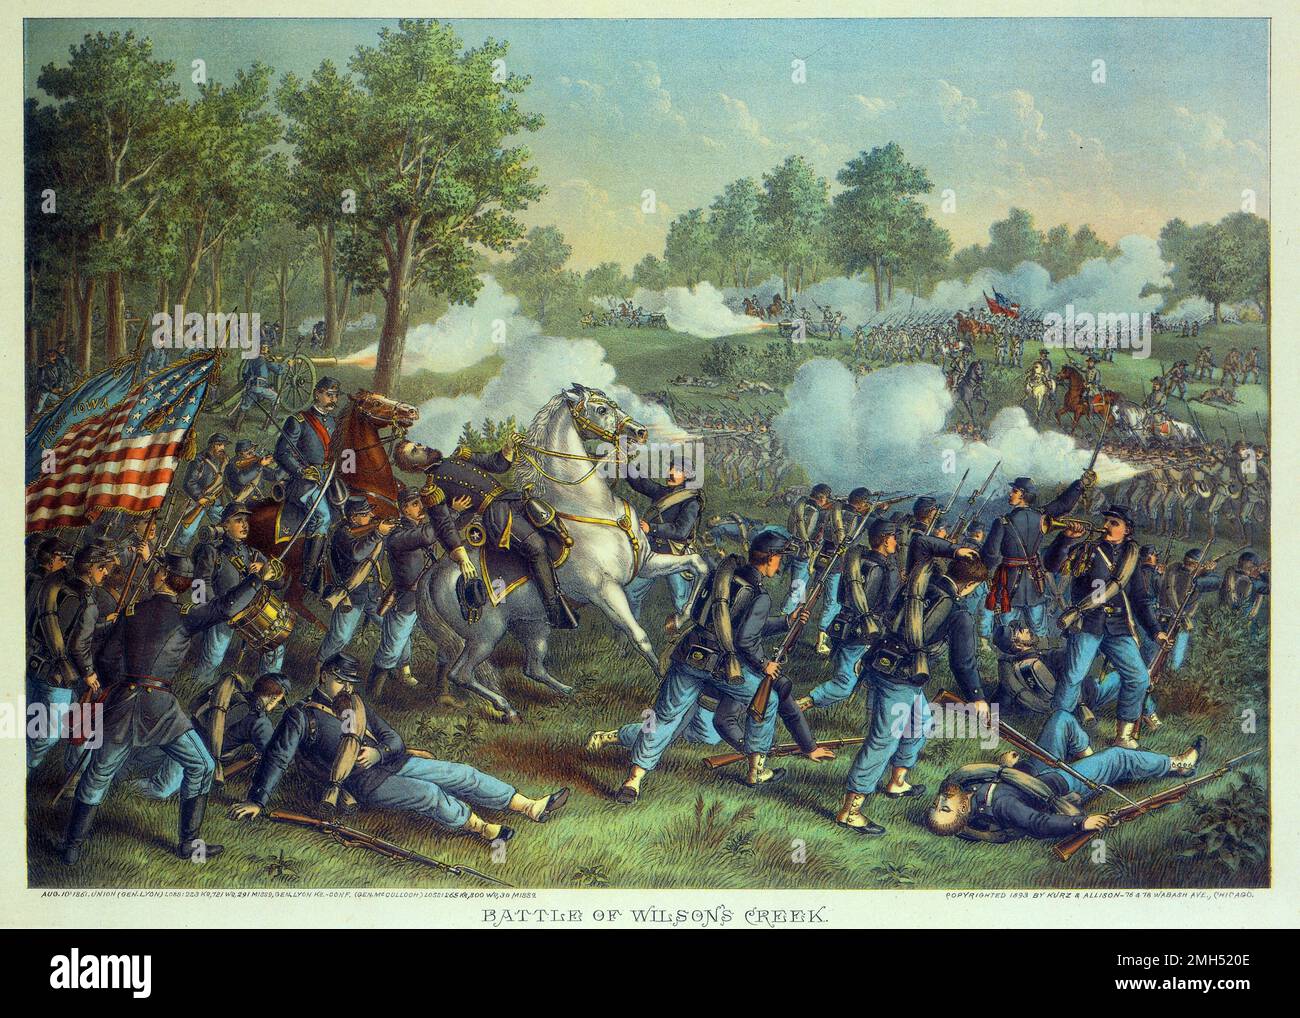 Schlacht von Wilson's Creek. Chromolithograph von Kurz und Allison, 1893. Die Schlacht von Wilson's Creek, auch bekannt als die Schlacht von Oak Hills, war eine große Schlacht in den letzten Monaten des Amerikanischen Bürgerkriegs, der am 10. August 1861 stattfand. Die Unionisten unter Nathaniel Lyon und Samuel D. Sturgis verloren an die Konföderierten unter Sterling Price und Benjamin McCulloch. General Lyon wurde während des Kampfes getötet. Stockfoto